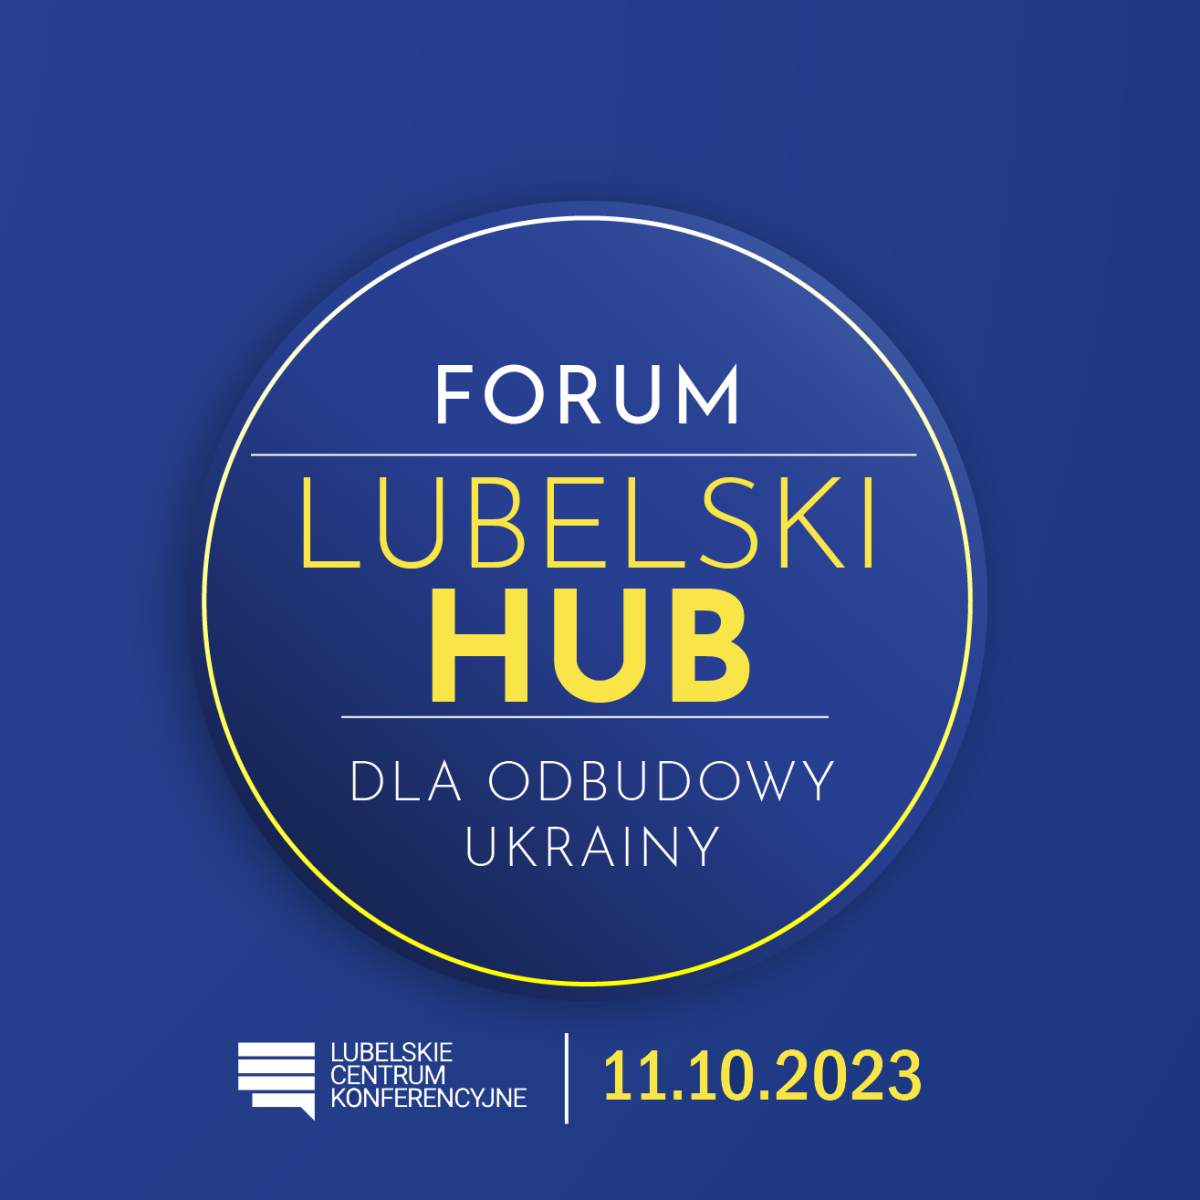 Forum - Lubelski Hub dla odbudowy Ukrainy 